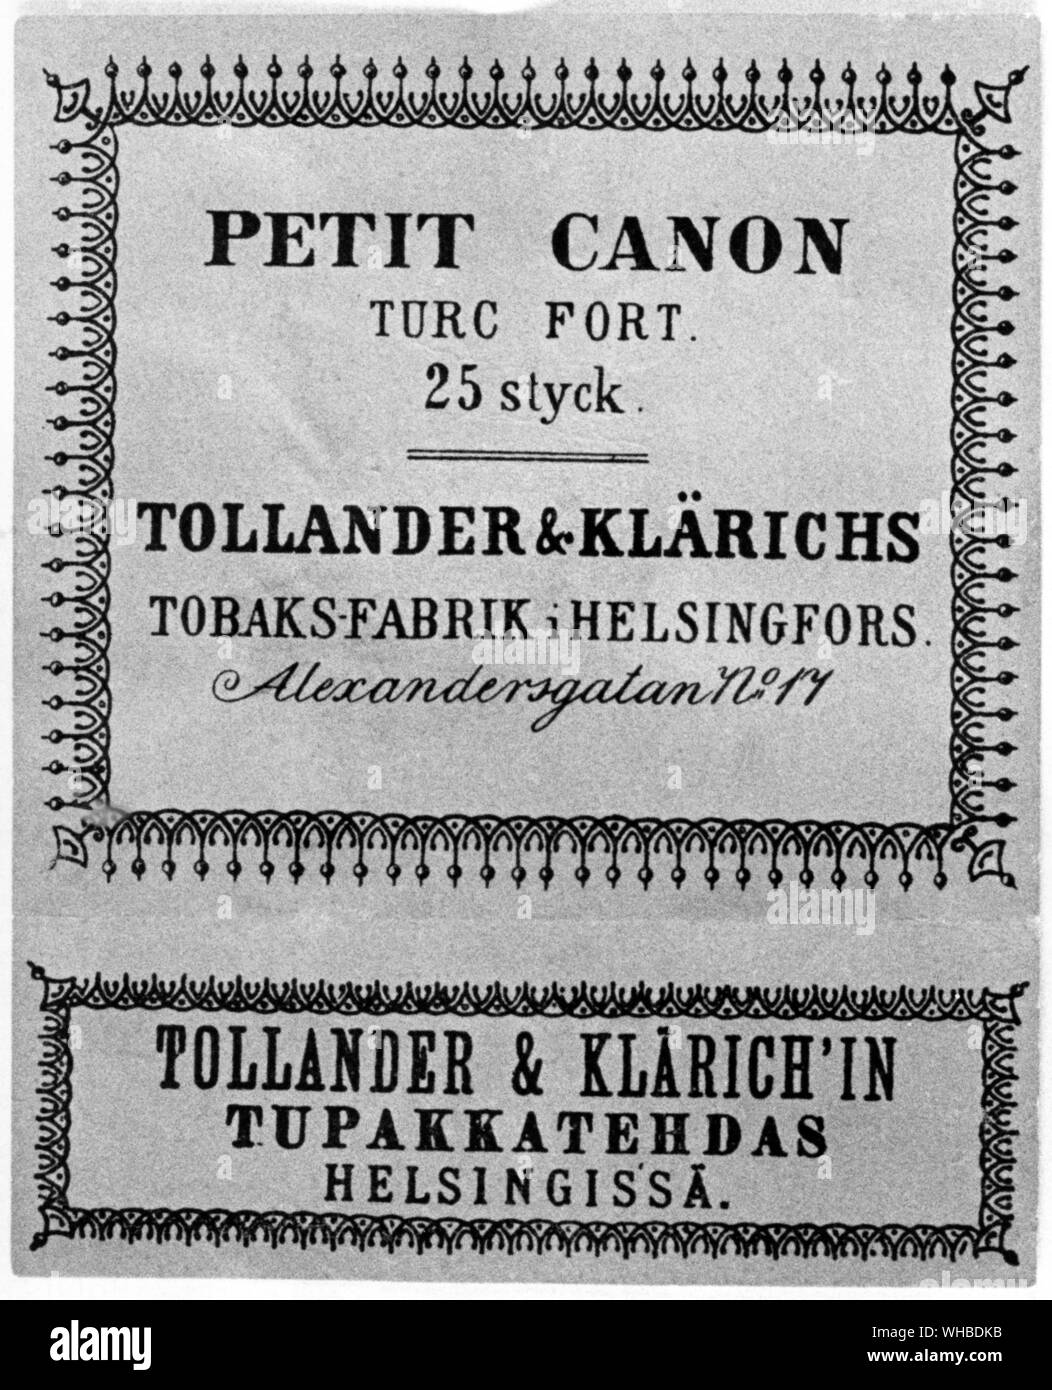 Zigarettenpackung 1860 - Petit Canon Turc Fort 25 styck - Tollander & Klarichs Tobaks-Fabrik ich Helsingfors - Alexandersgatan Nr. 17 - Tollander & Klarich" in Tupakkatehdas Helsingissa.. Stockfoto